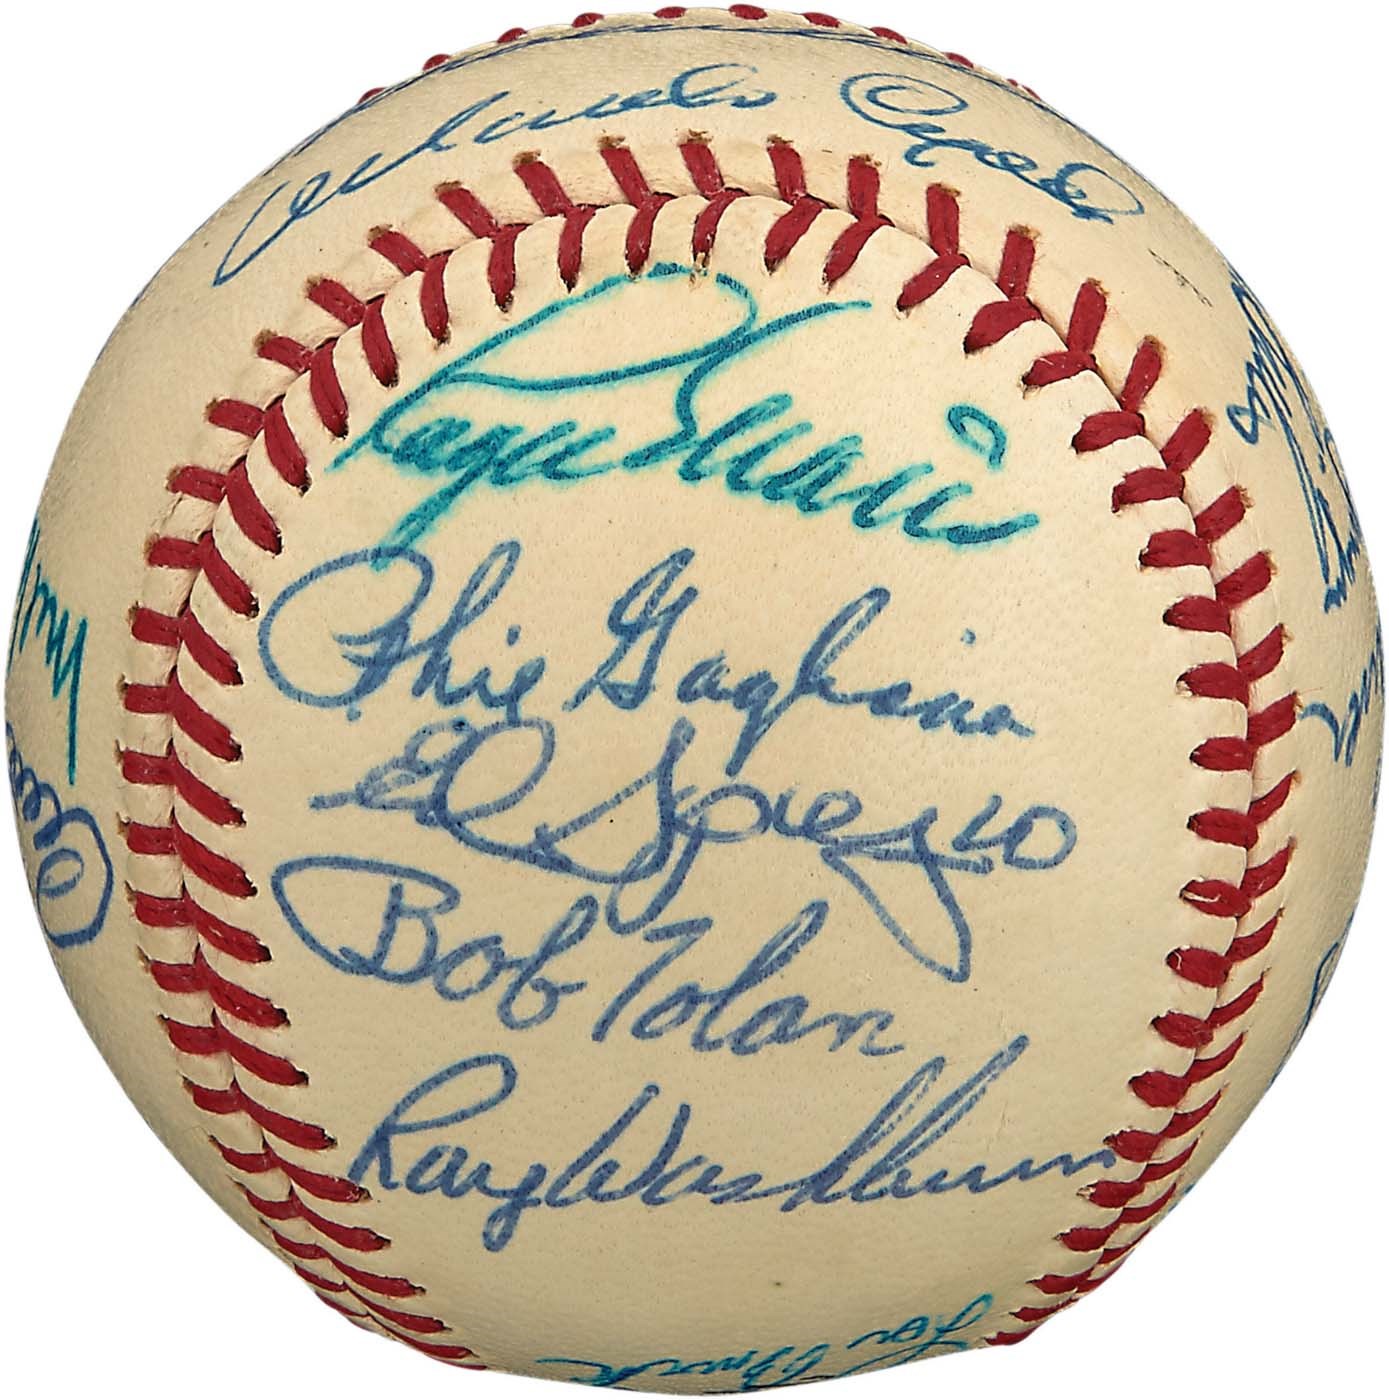 - High Grade 1968 St. Louis Cardinals Team-Signed Baseball (PSA MINT 9)